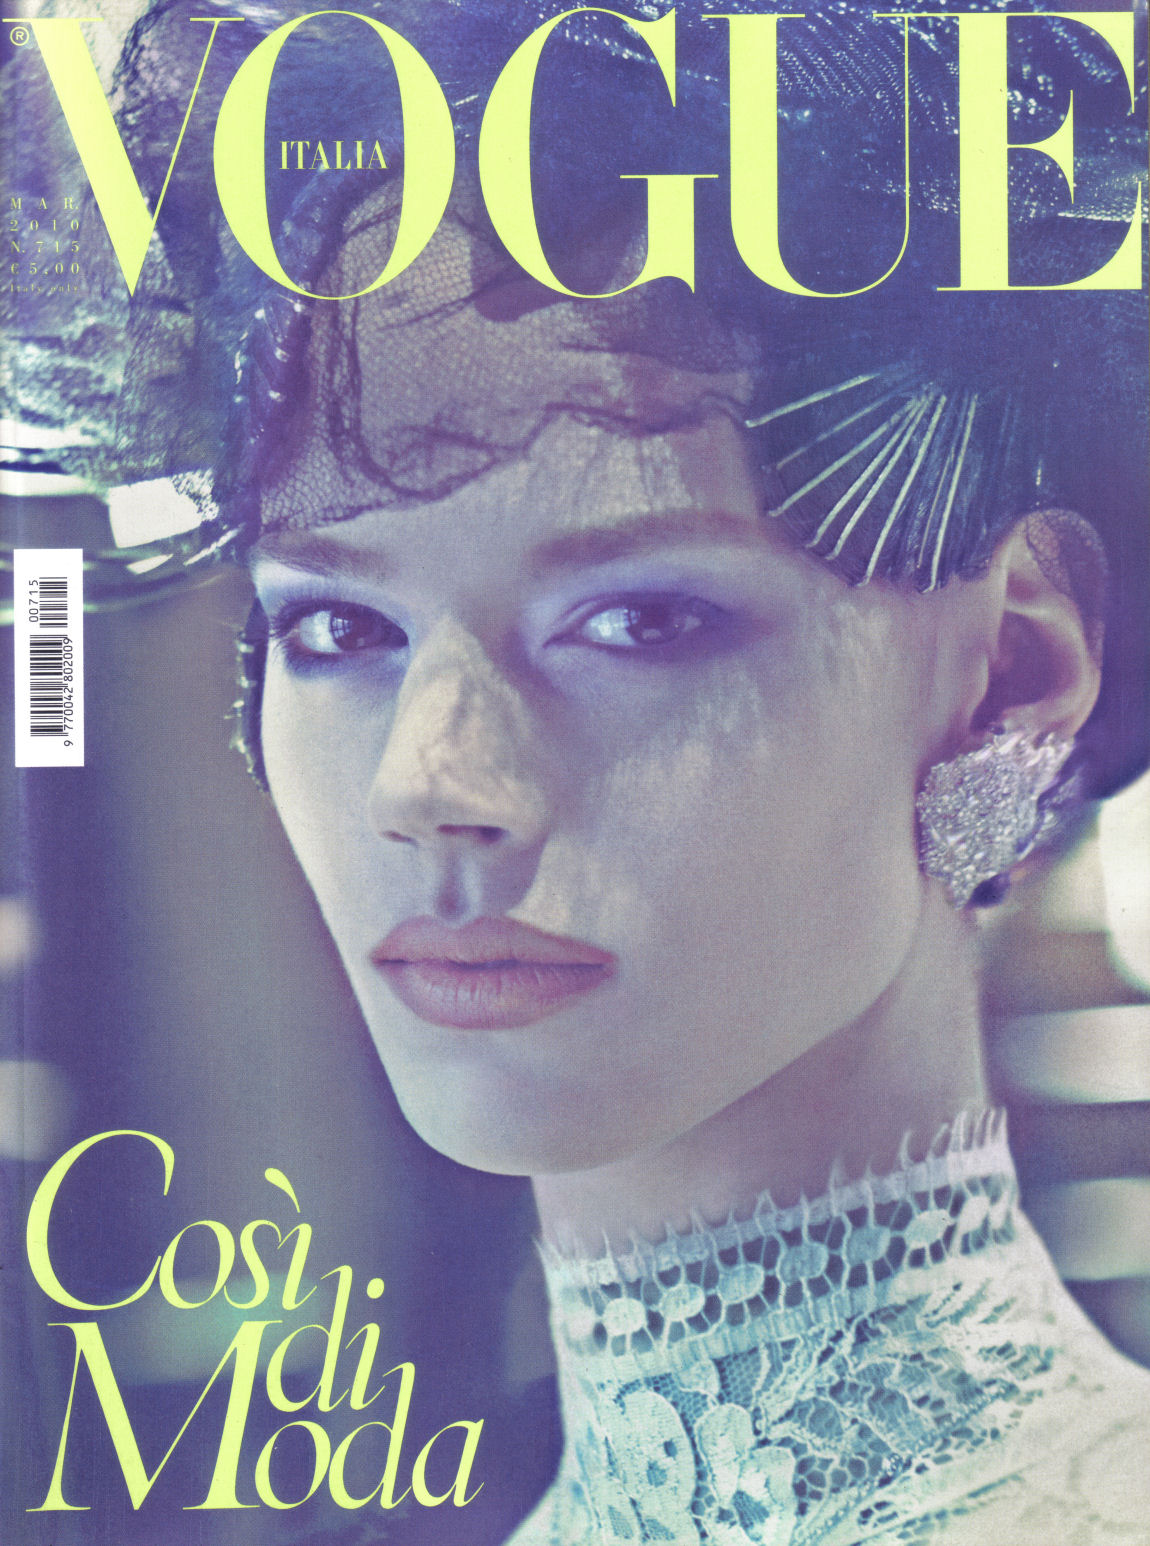 vogue italia archive: Vogue Italia March 2010 | In Grande Stile